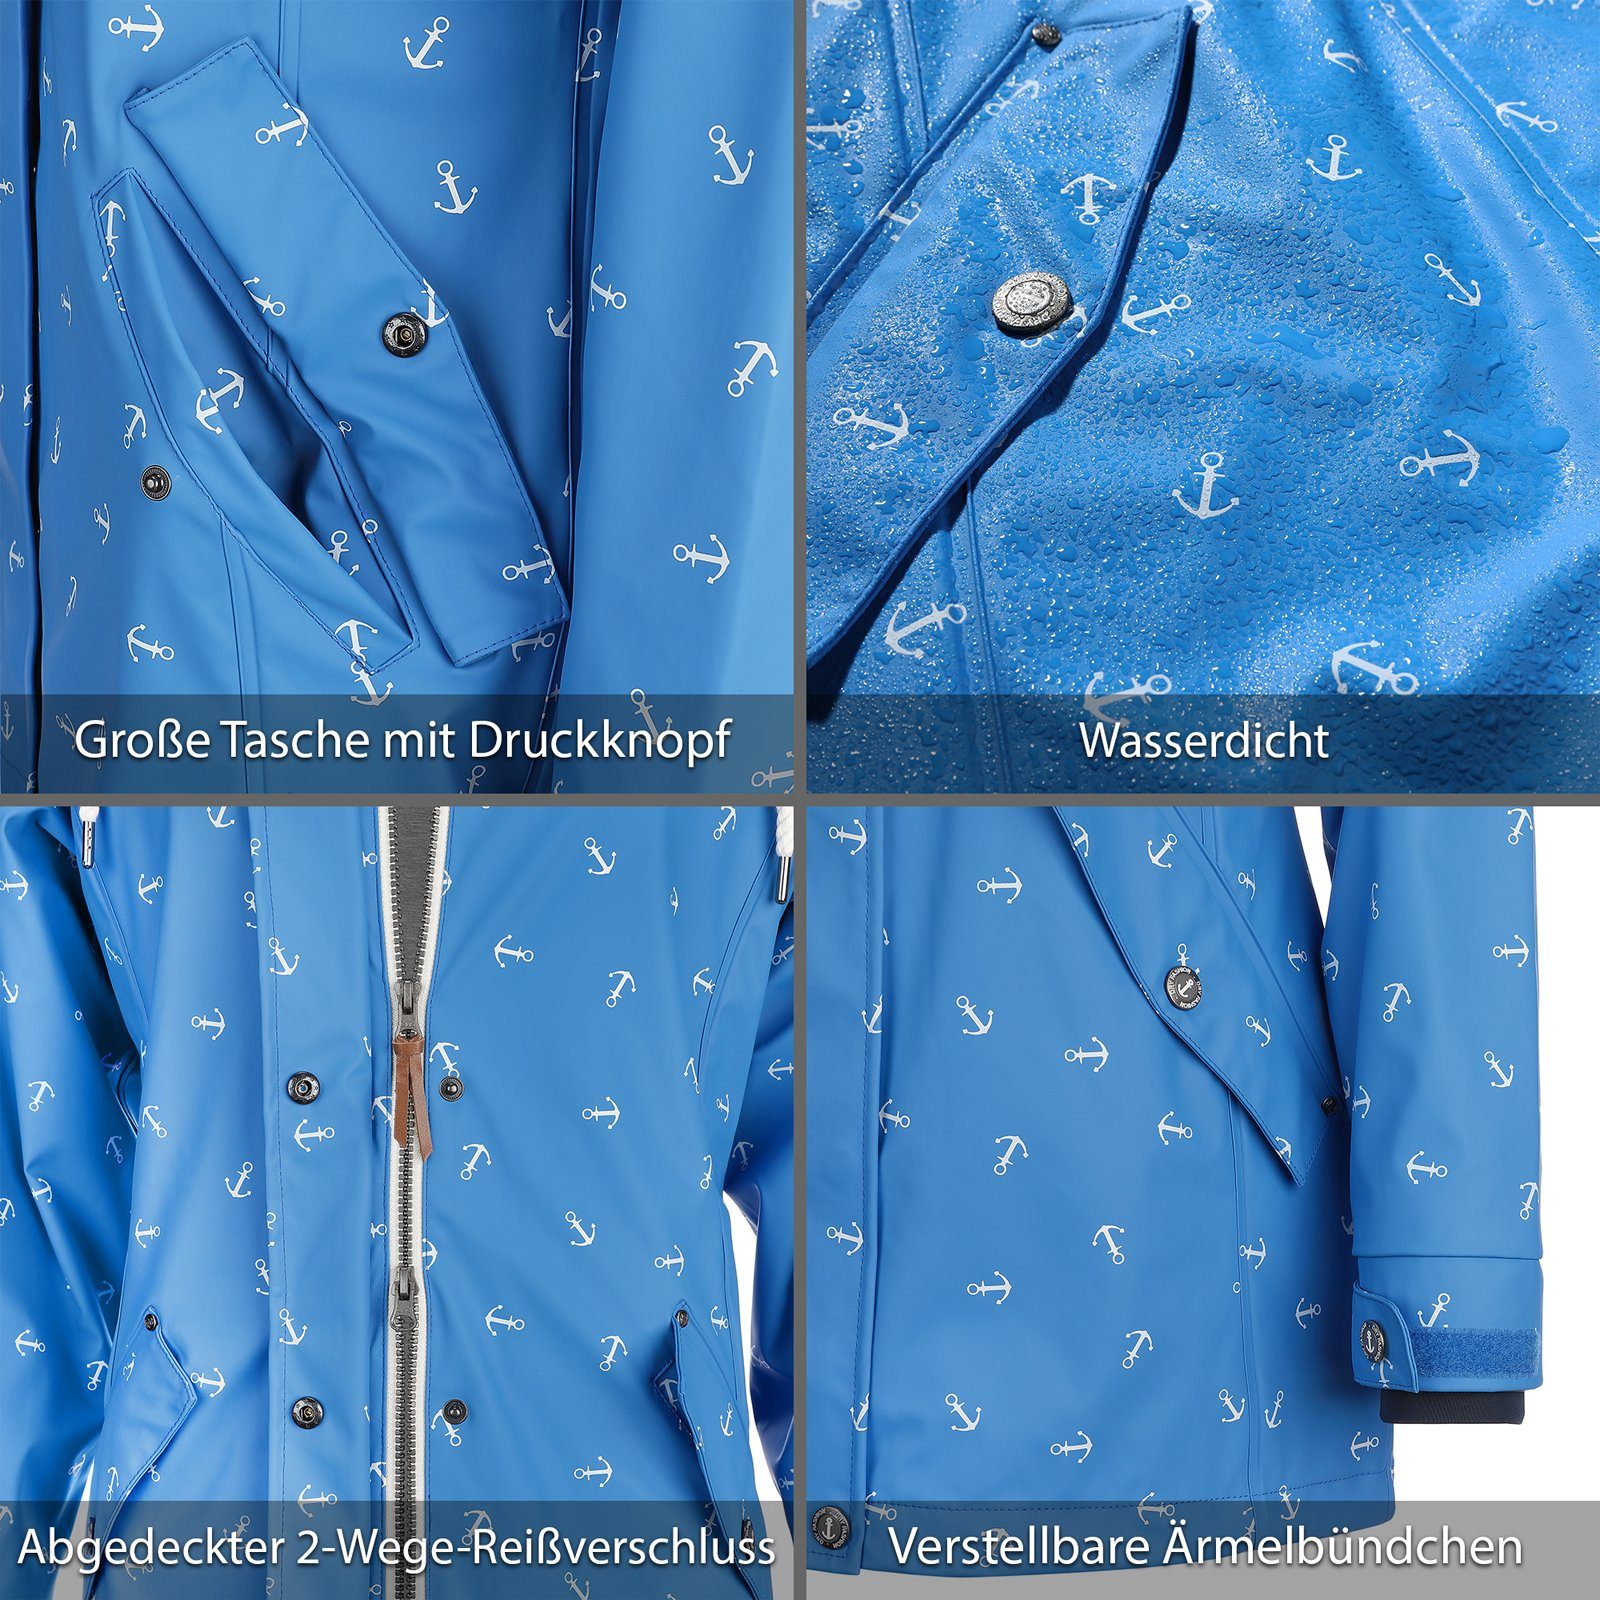 Regenmantel Fashion Cuxhaven mit wasserdicht Dry Jacke Anker-Print - hellblau Regenjacke Damen Kapuze